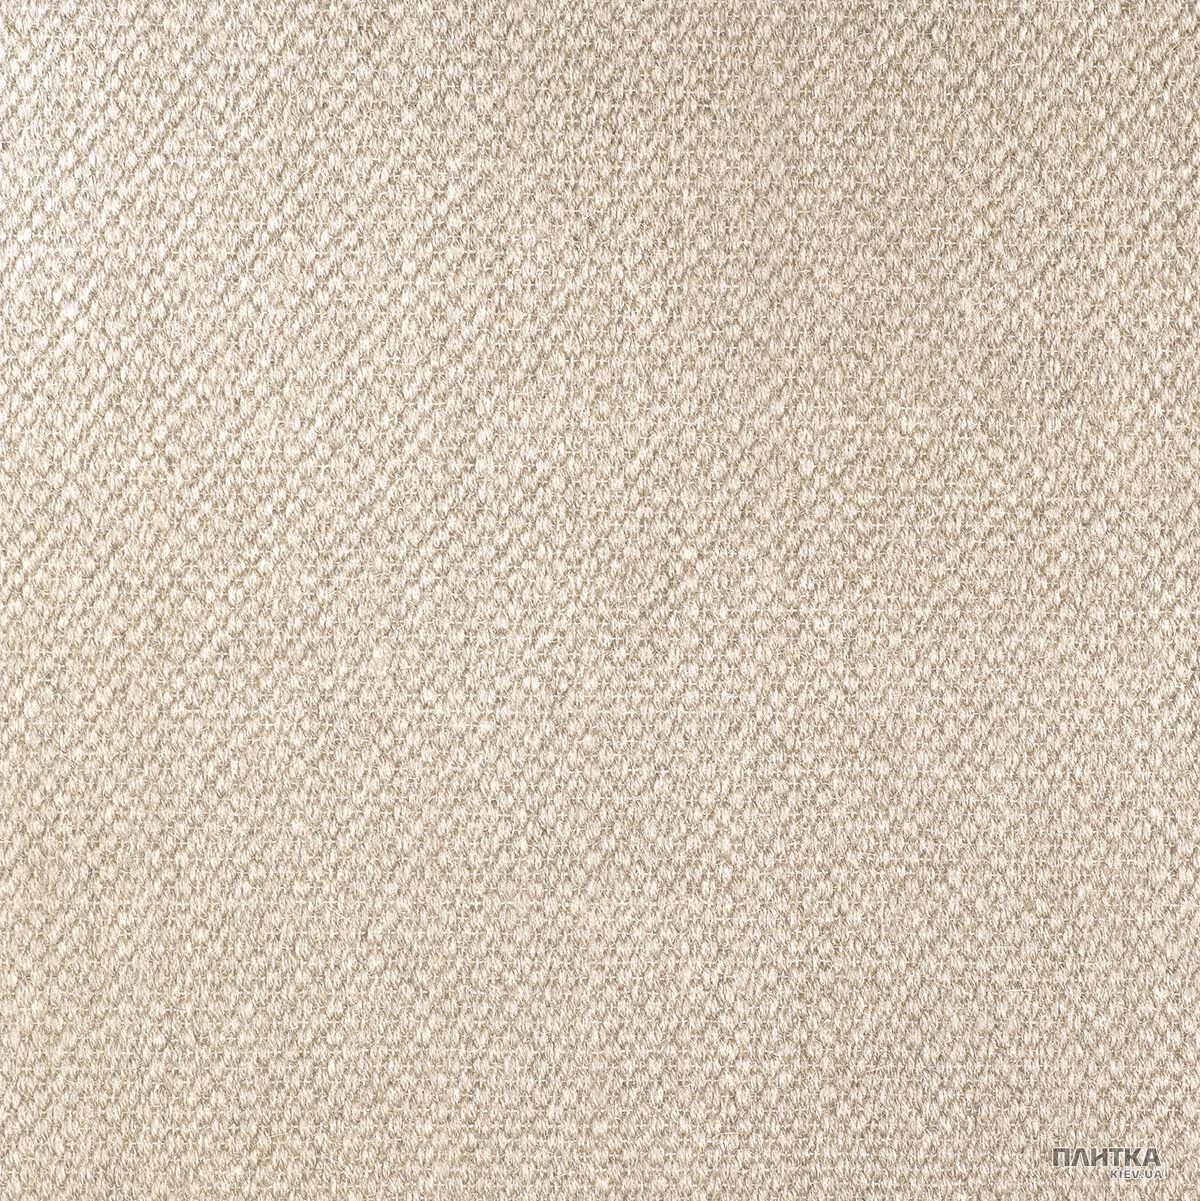 Керамогранит APE Ceramica Carpet CARPET NATURAL RECT коричневый